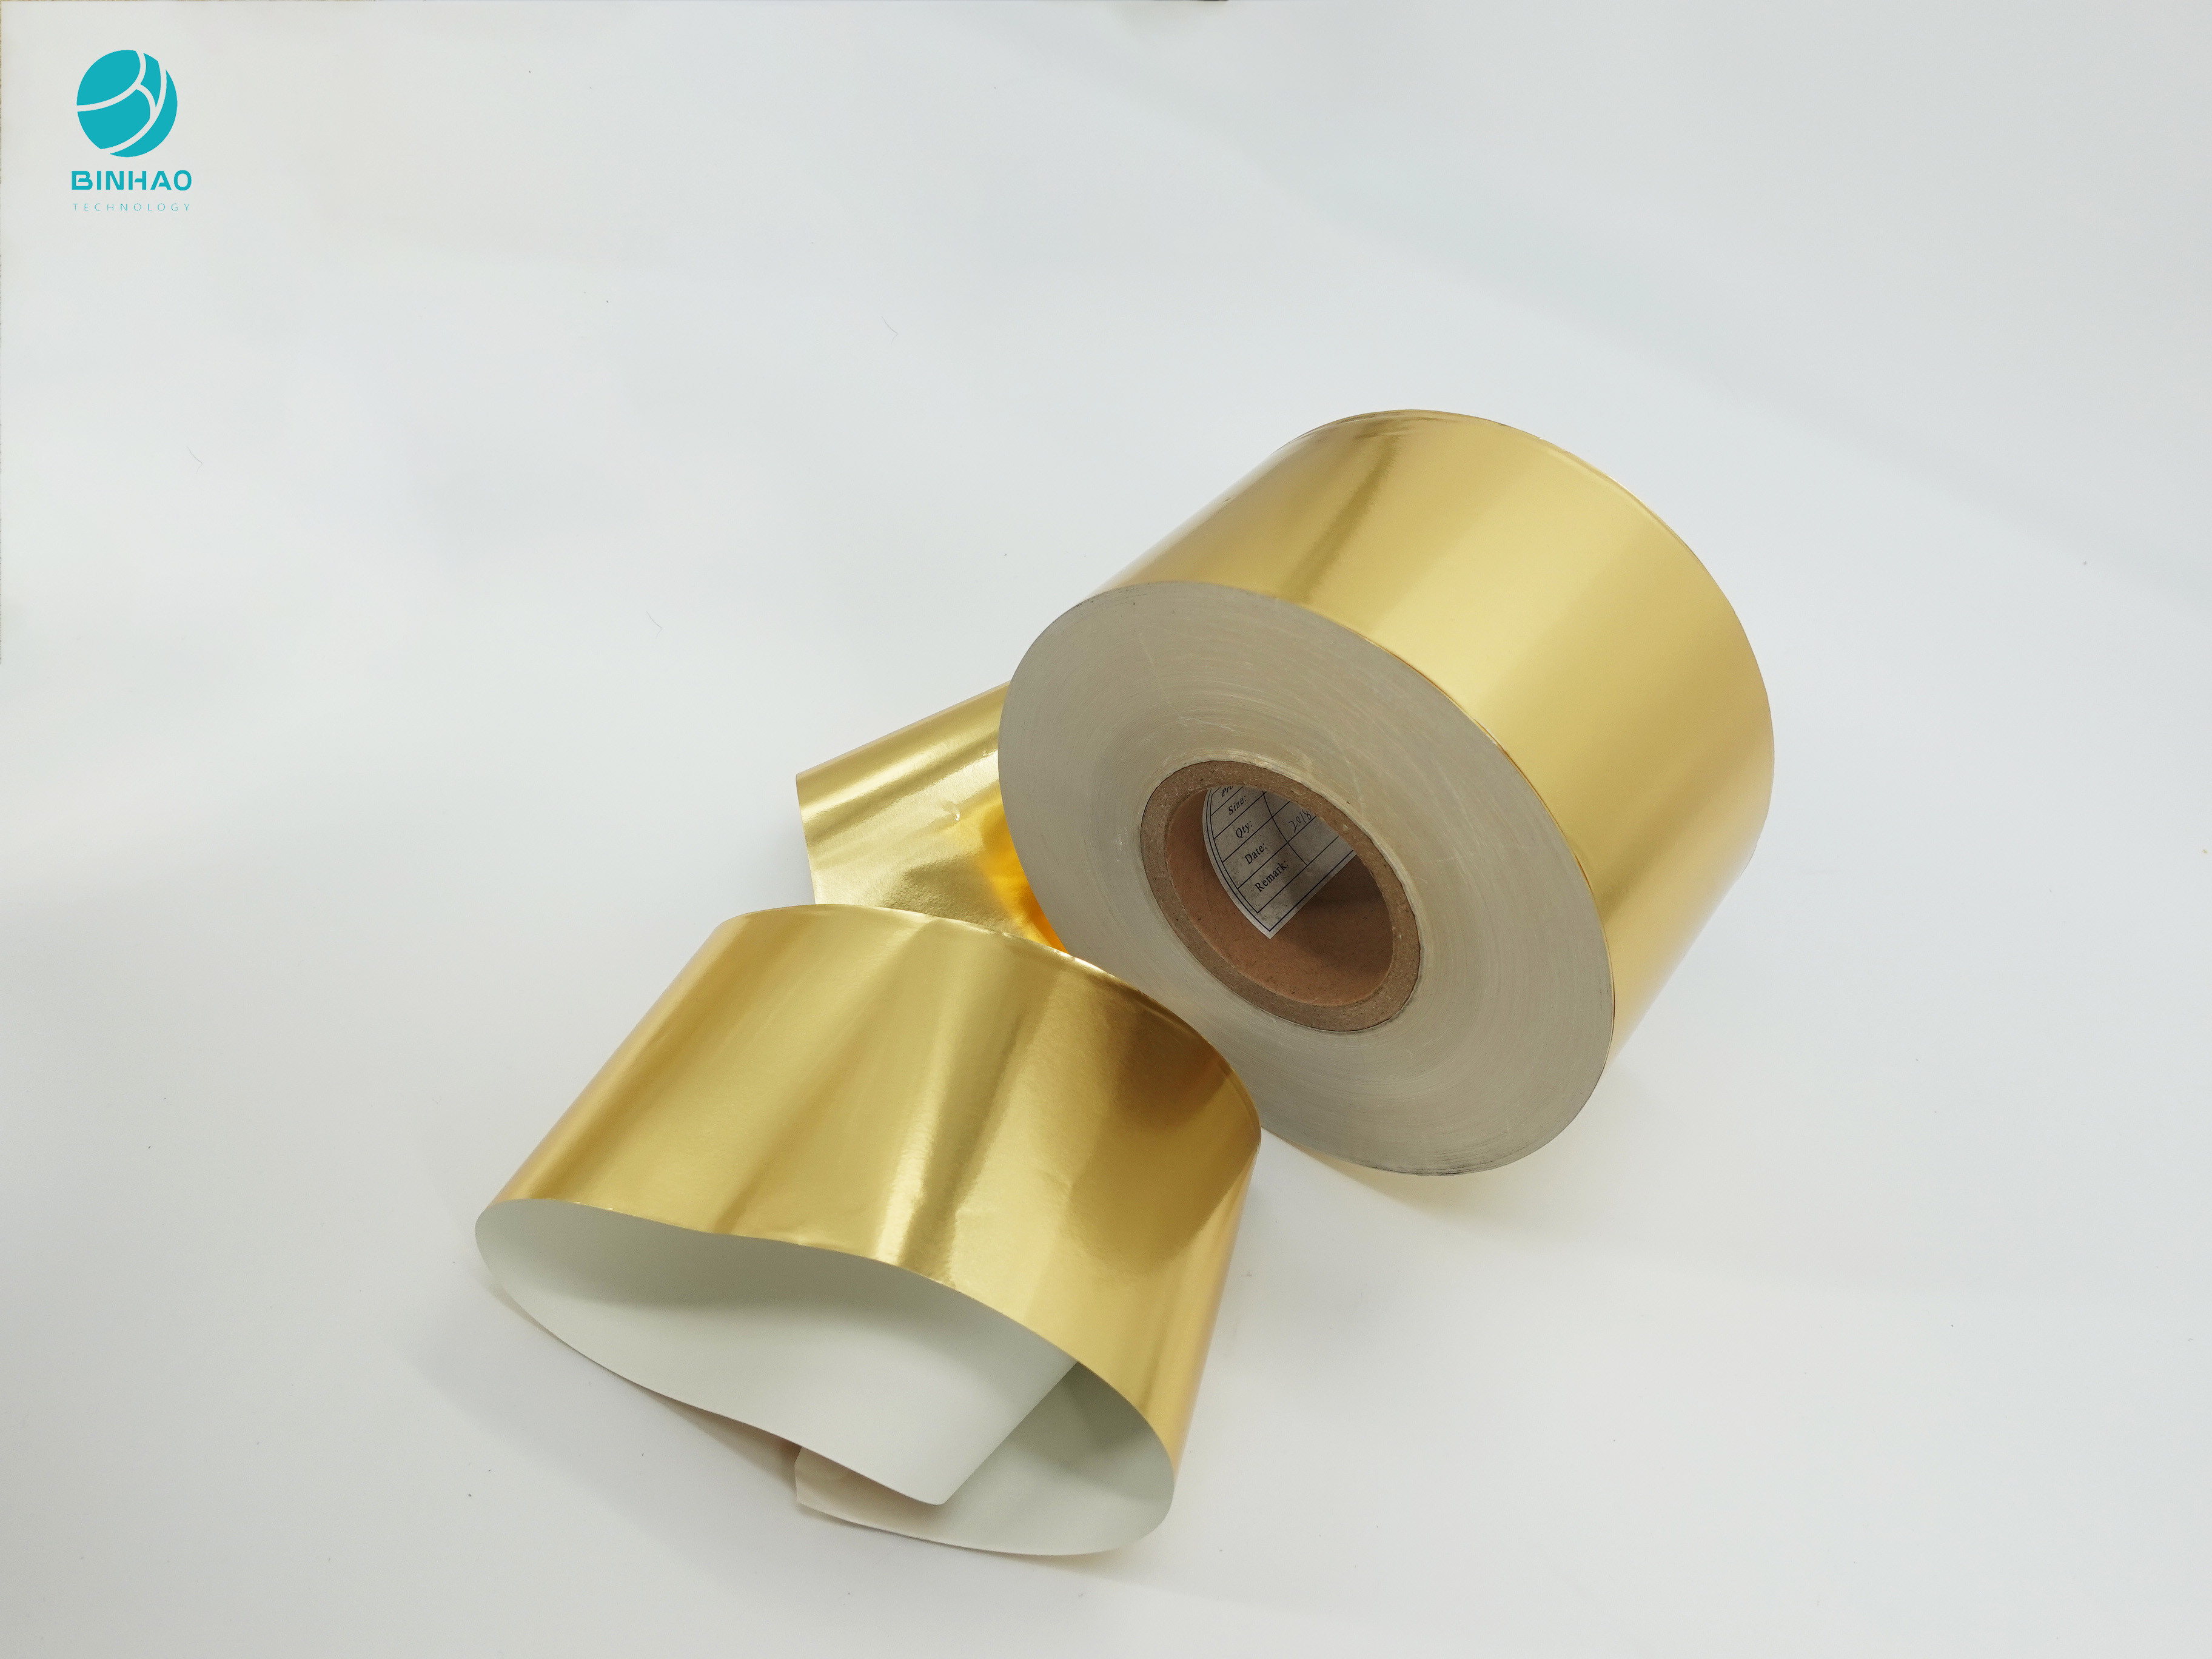 Σύνθετο 83mm φωτεινό χρυσό έγγραφο φύλλων αλουμινίου αλουμινίου cOem για τη συσκευασία τσιγάρων